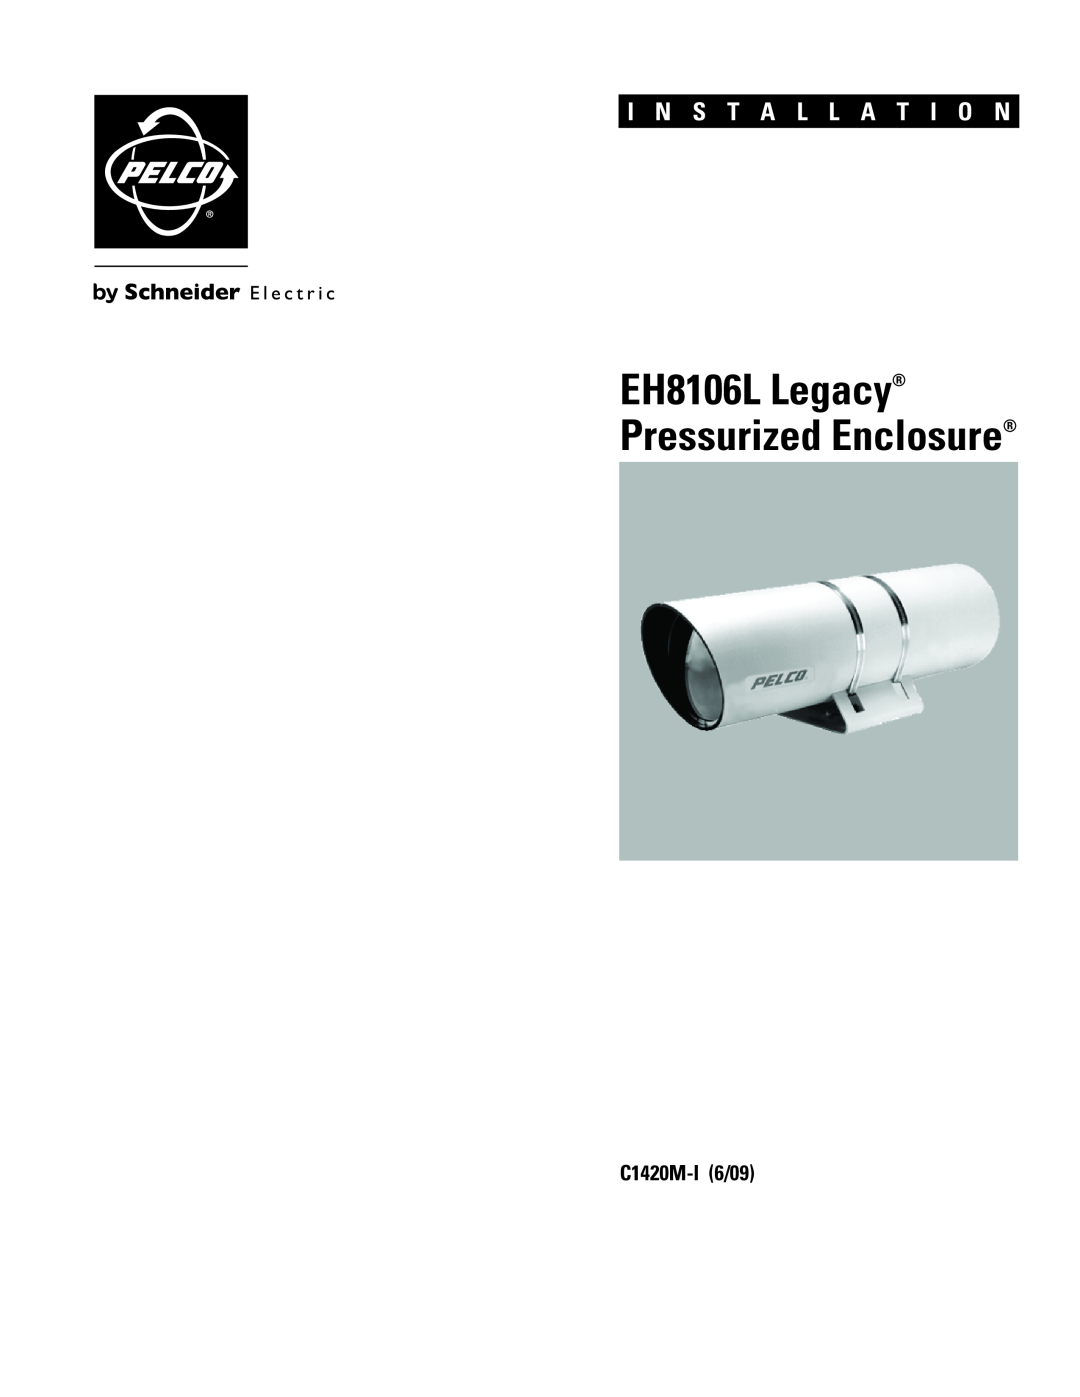 Pelco manual C1420M-I6/09, EH8106L Legacy Pressurized Enclosure, I N S T A L L A T I O N 